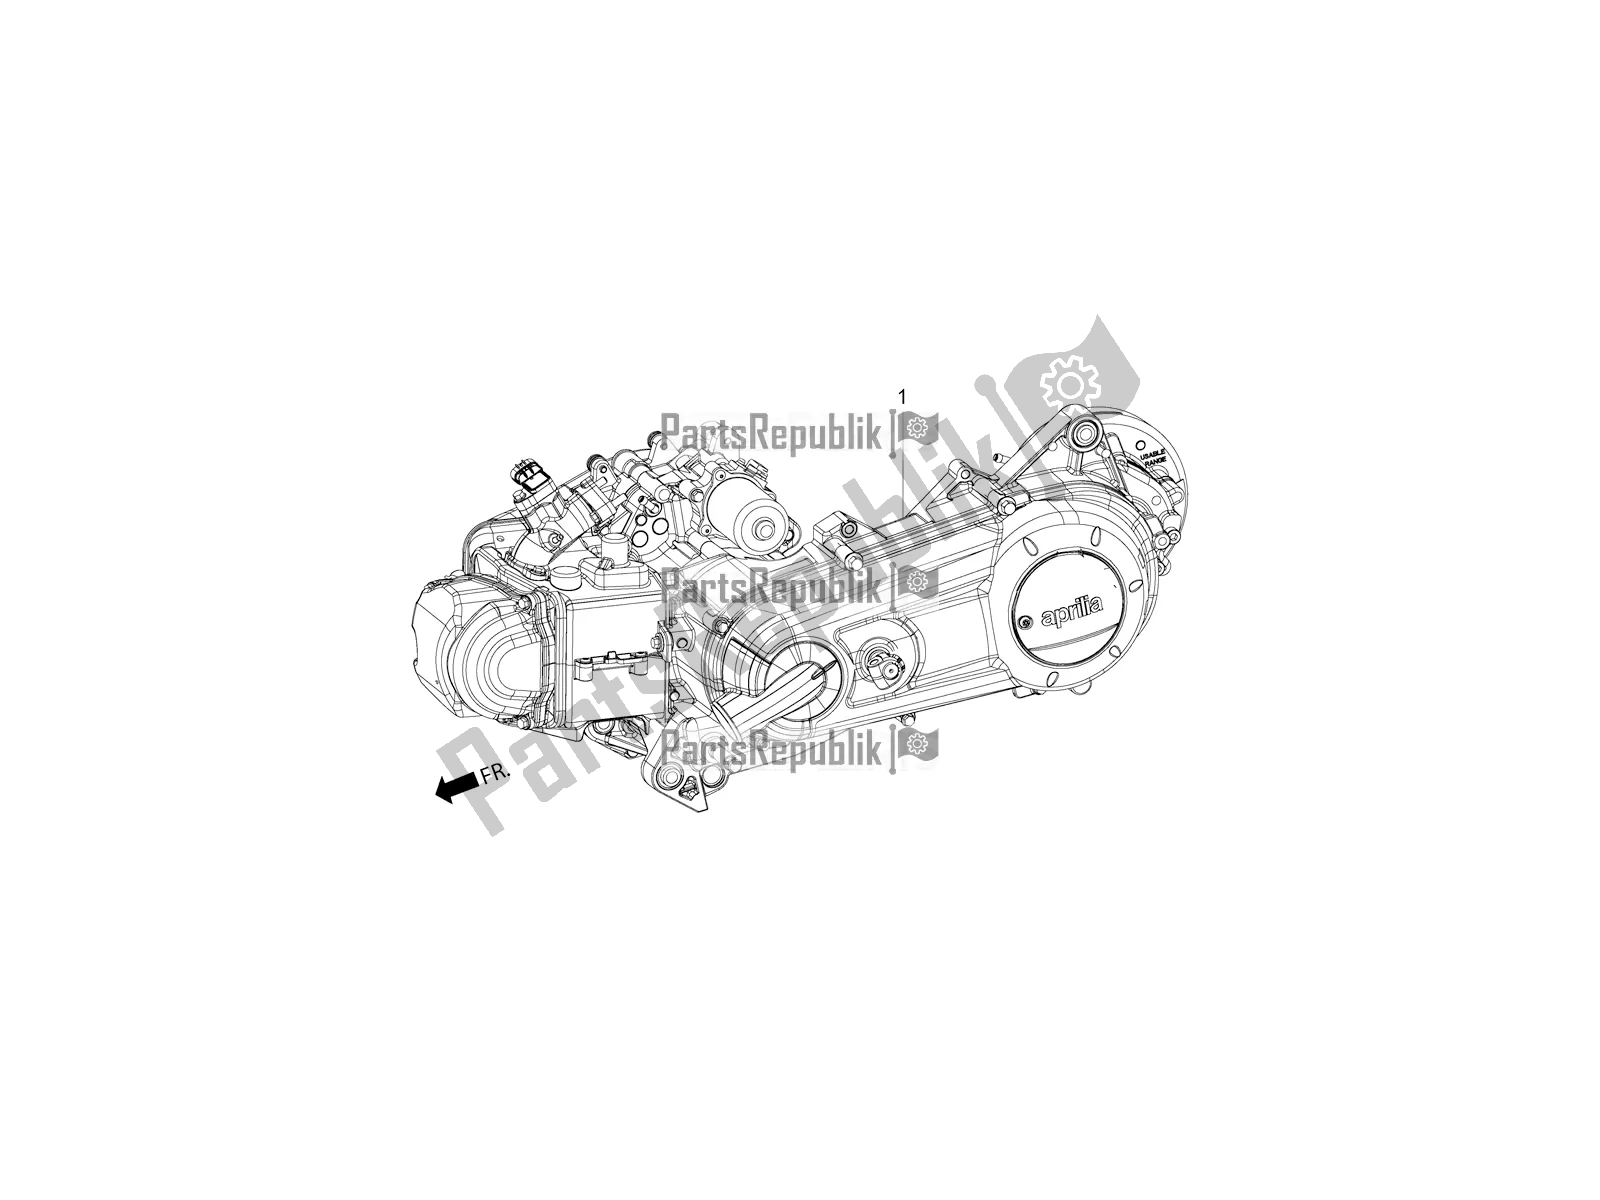 Alle onderdelen voor de Complete Engine van de Aprilia SR Motard 150 ABS Apac 2020